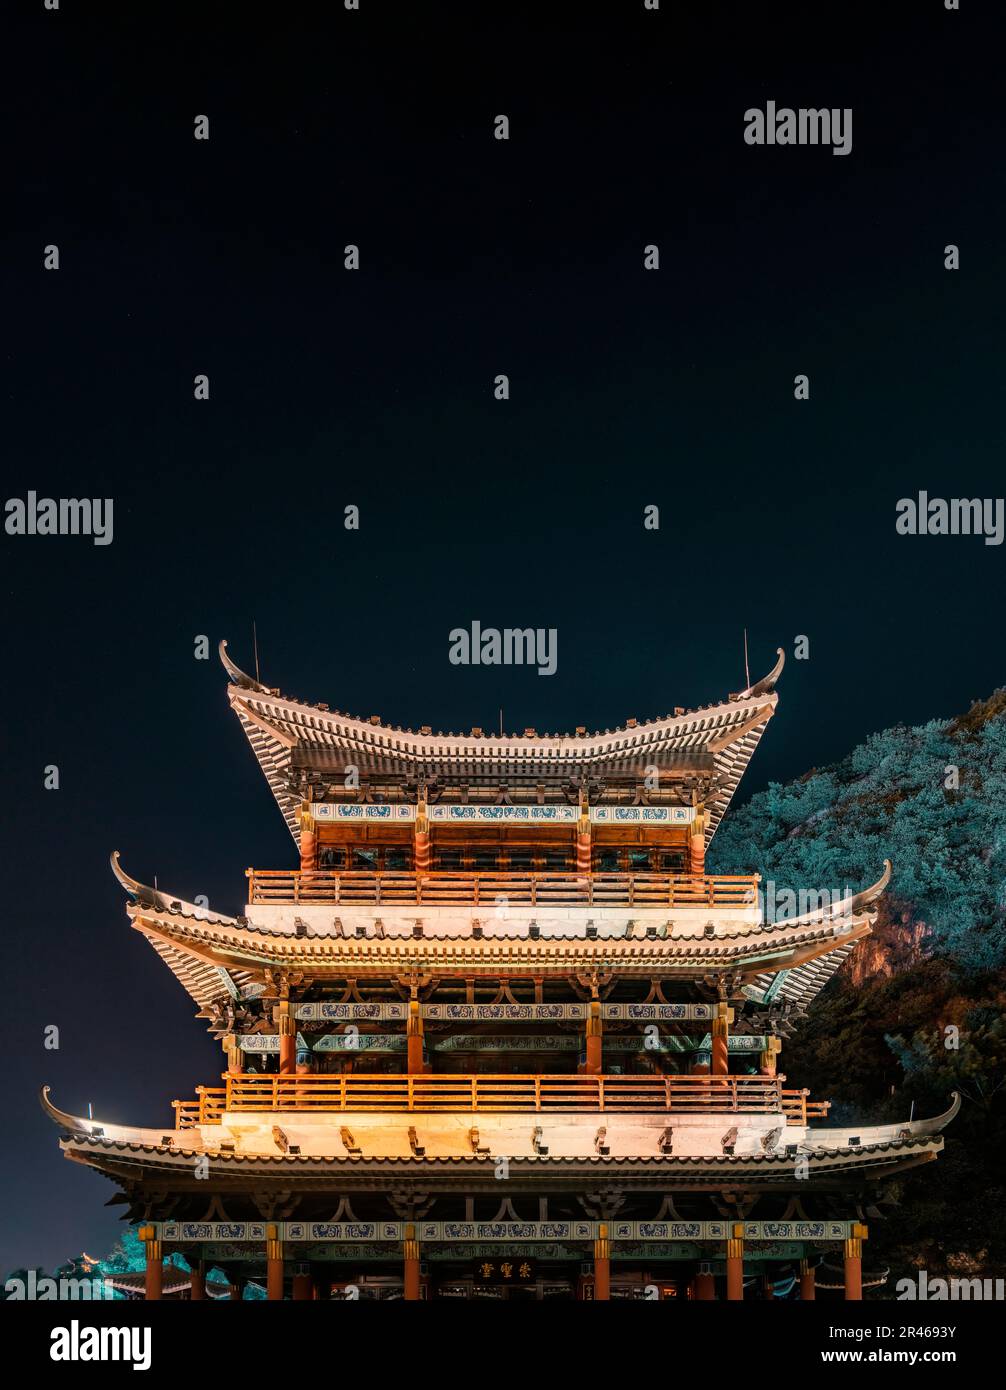 The night view of Chongsheng Hall of Confucian Temple in Liuzhou, Guangxi, China. Stock Photo